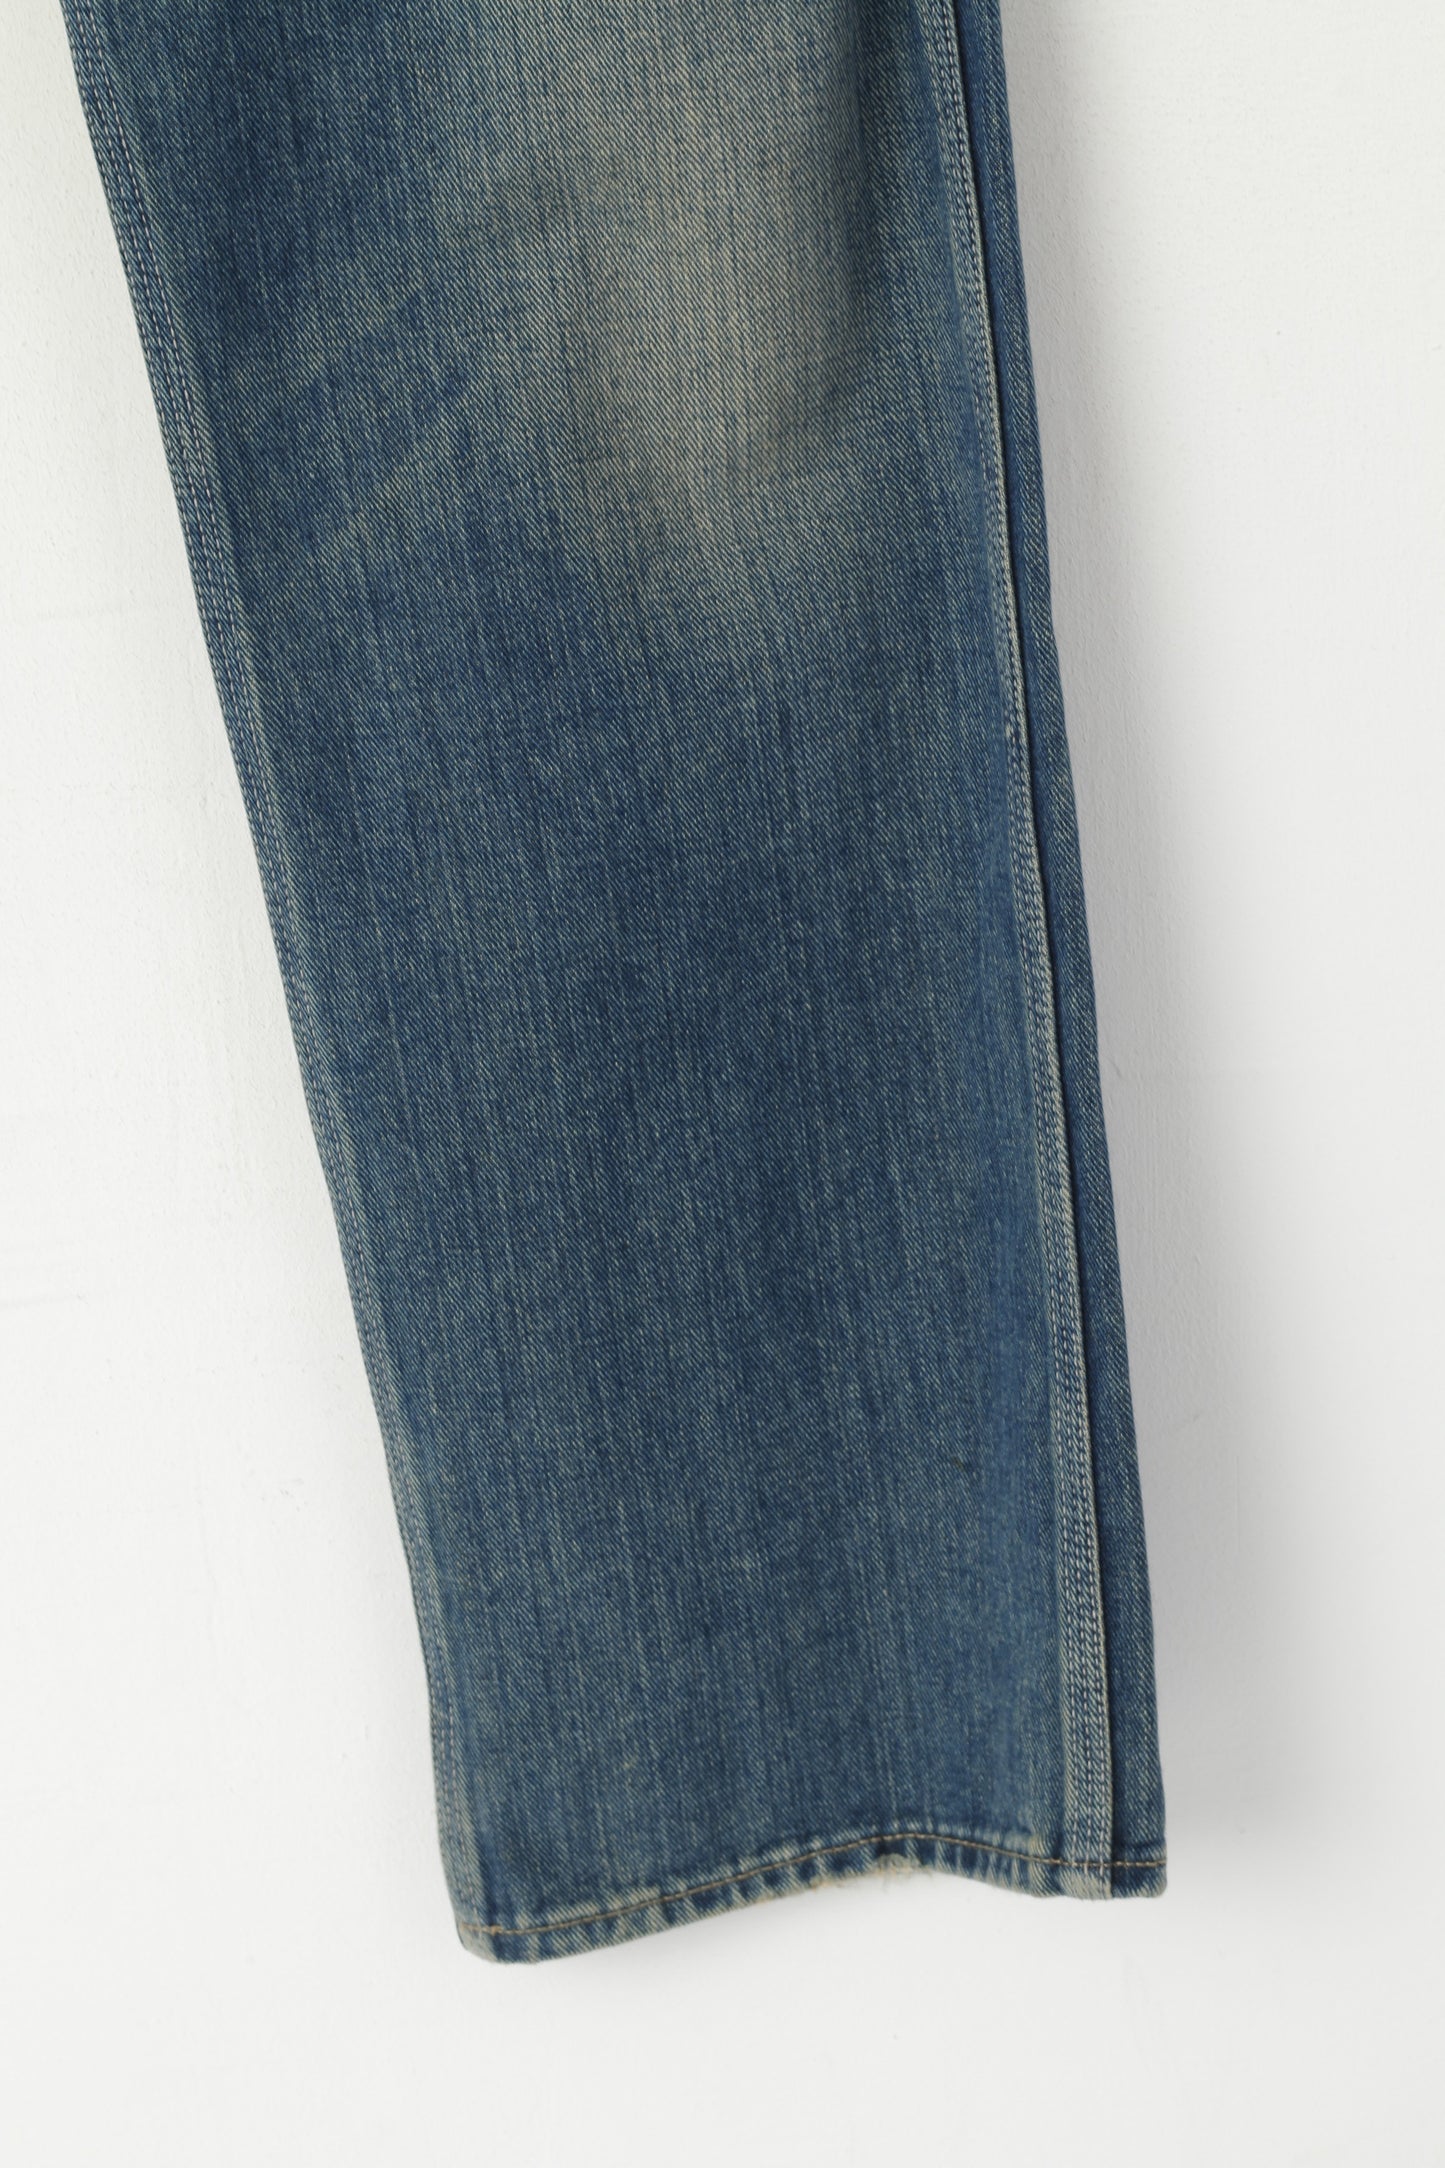 Paul Smith Jeans Uomo 34 Pantaloni Pantaloni classici a gamba dritta in cotone denim blu scuro